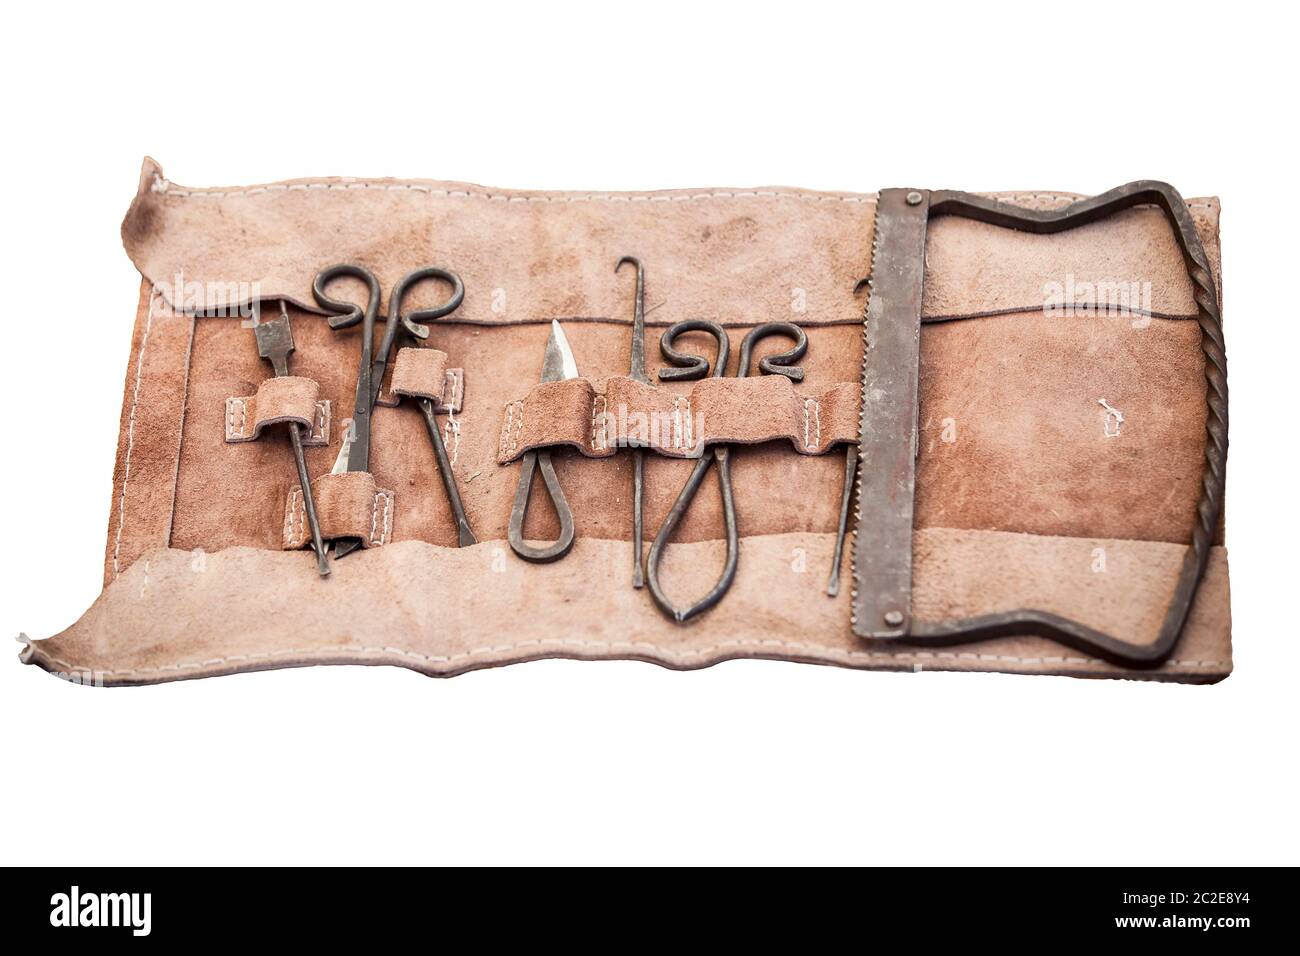 Les médecins en chirurgie médiévale outils cuir. Isolé Banque D'Images